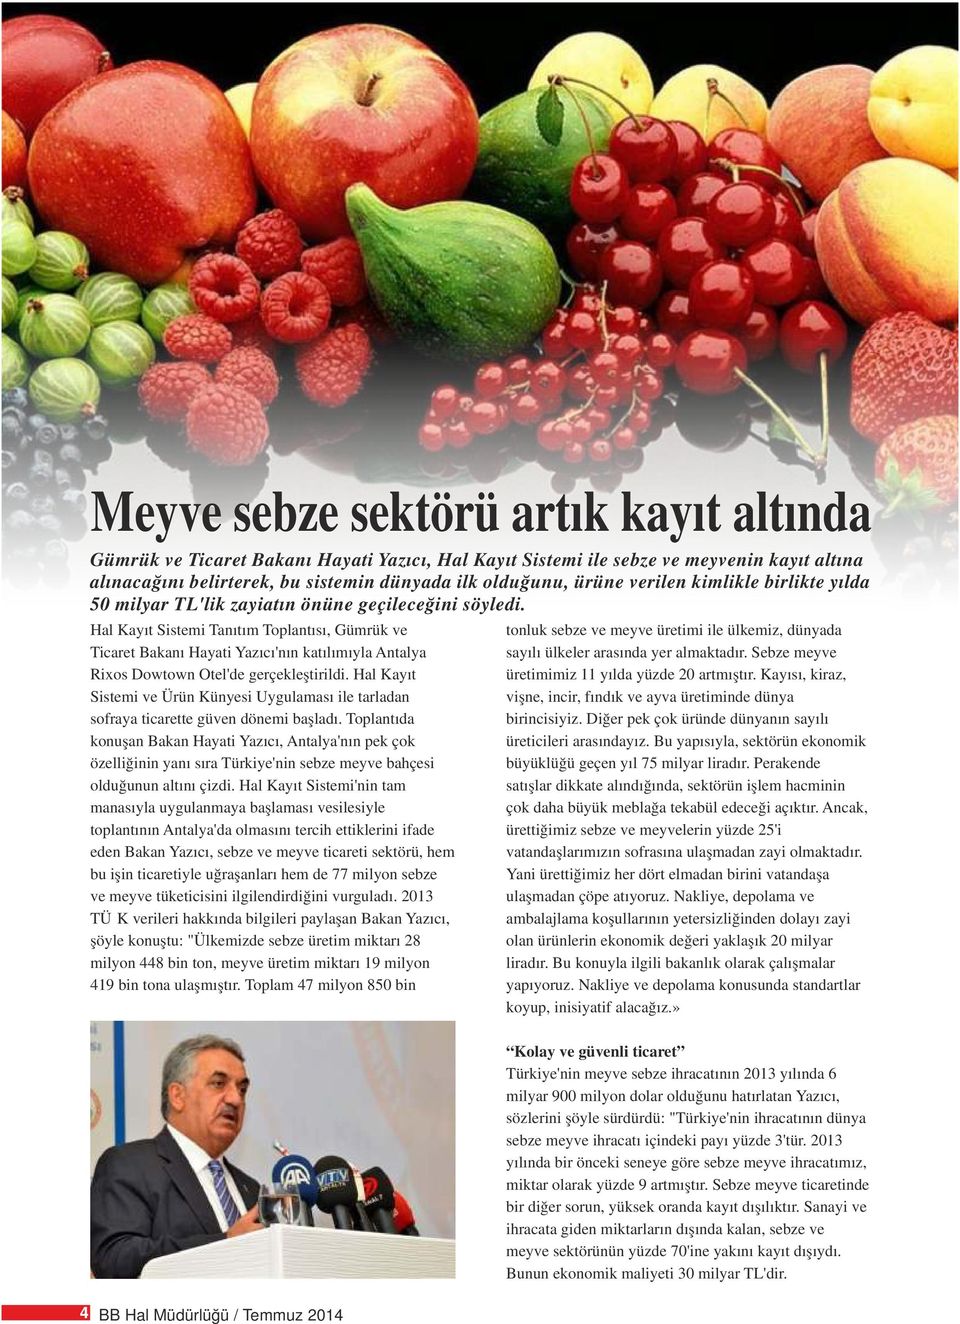 Hal Kayıt Sistemi Tanıtım Toplantısı, Gümrük ve tonluk sebze ve meyve üretimi ile ülkemiz, dünyada Ticaret Bakanı Hayati Yazıcı'nın katılımıyla Antalya sayılı ülkeler arasında yer almaktadır.